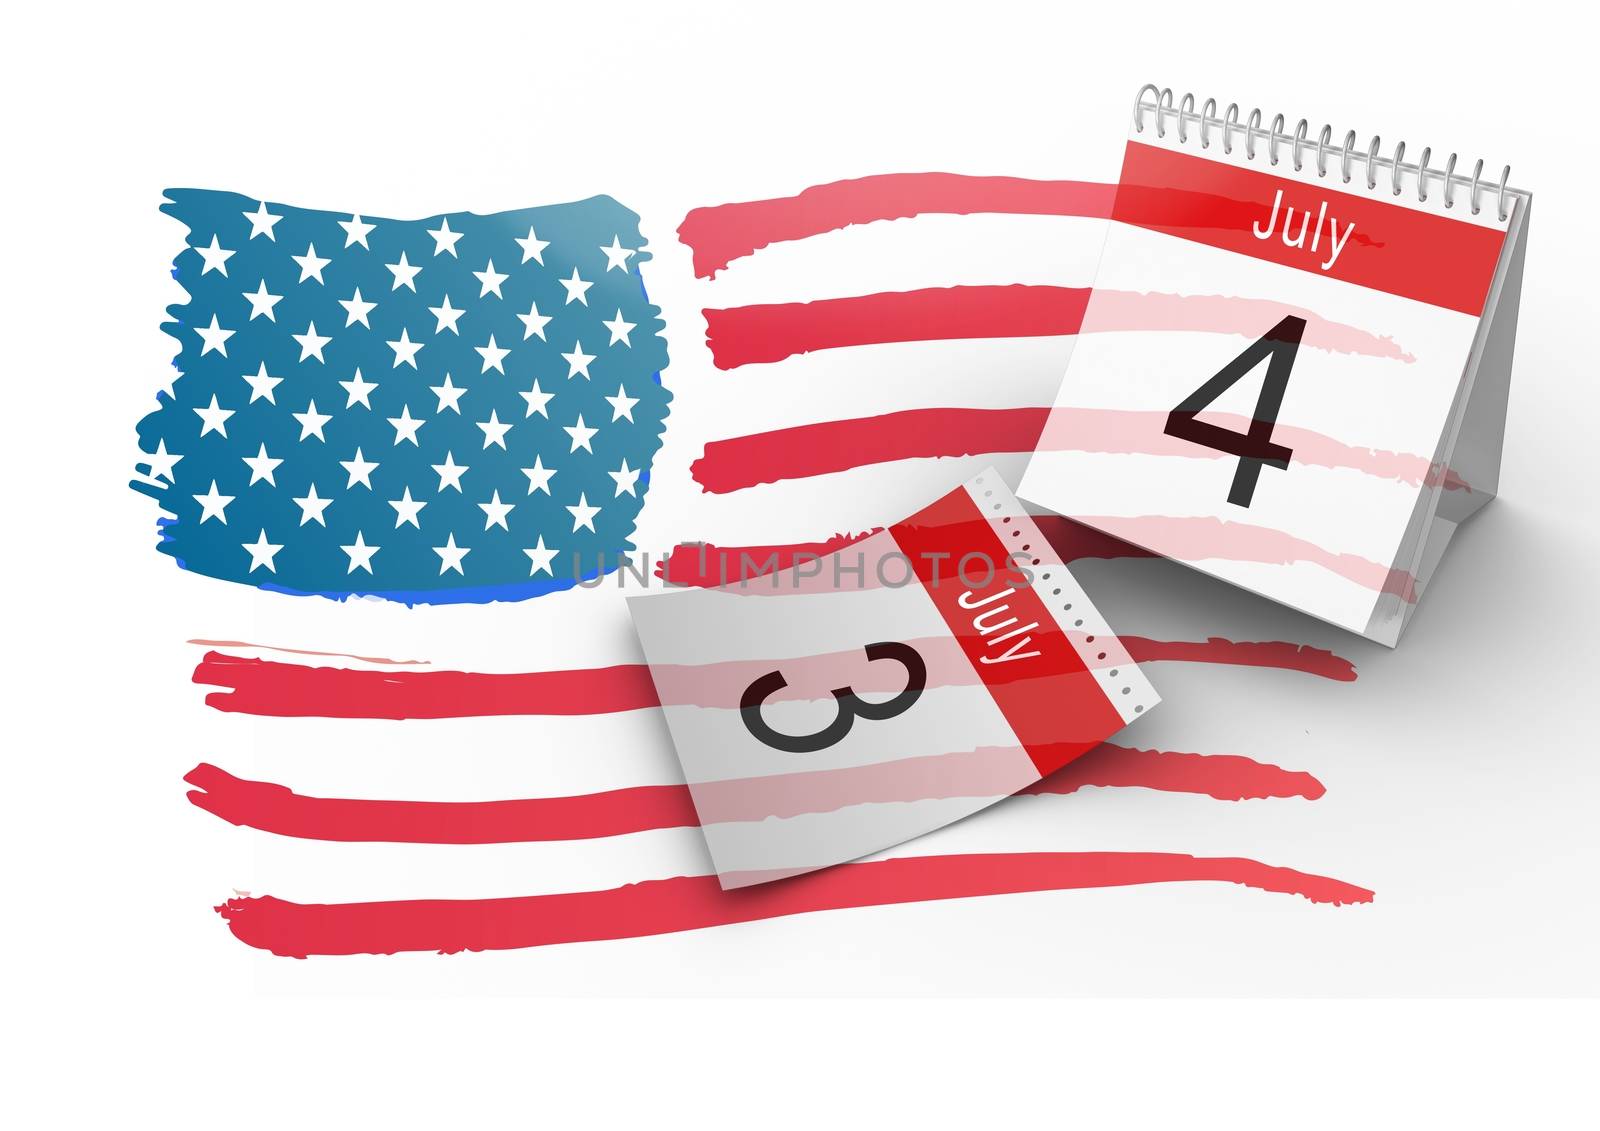 4th of July Calendar with drawn american flag by Wavebreakmedia